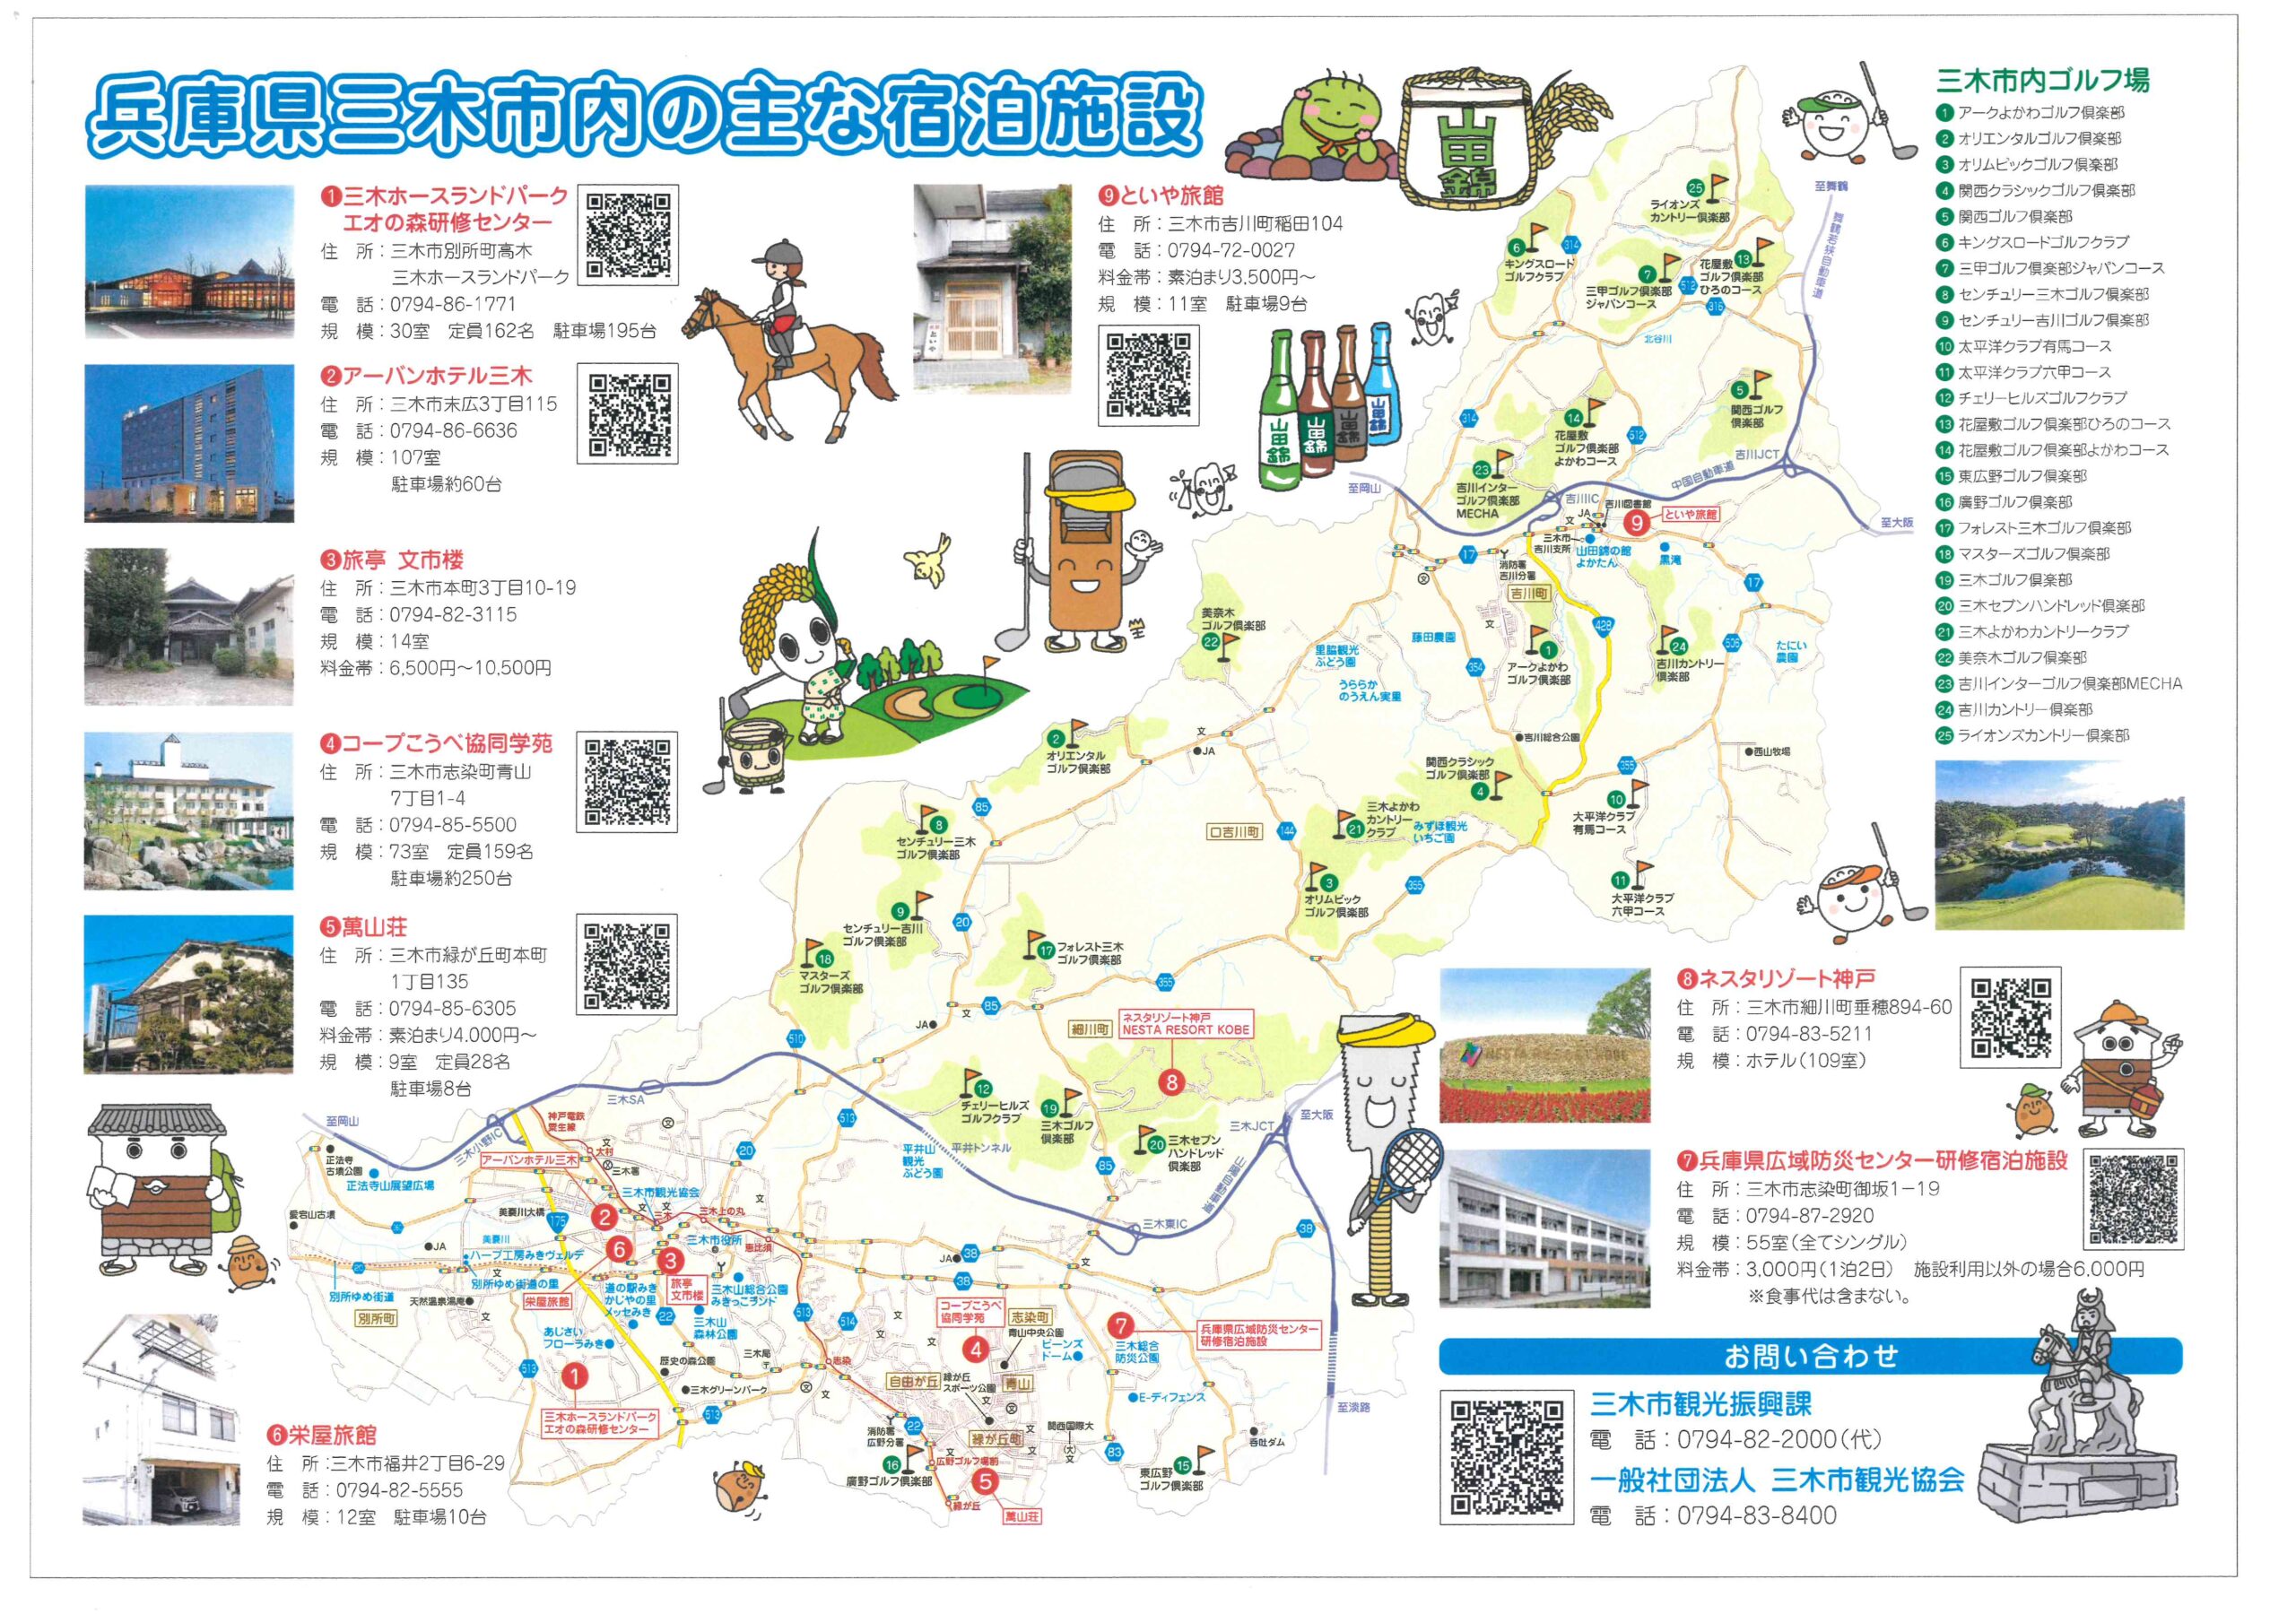 三木市内の主な宿泊施設を掲載したマップが出来ました